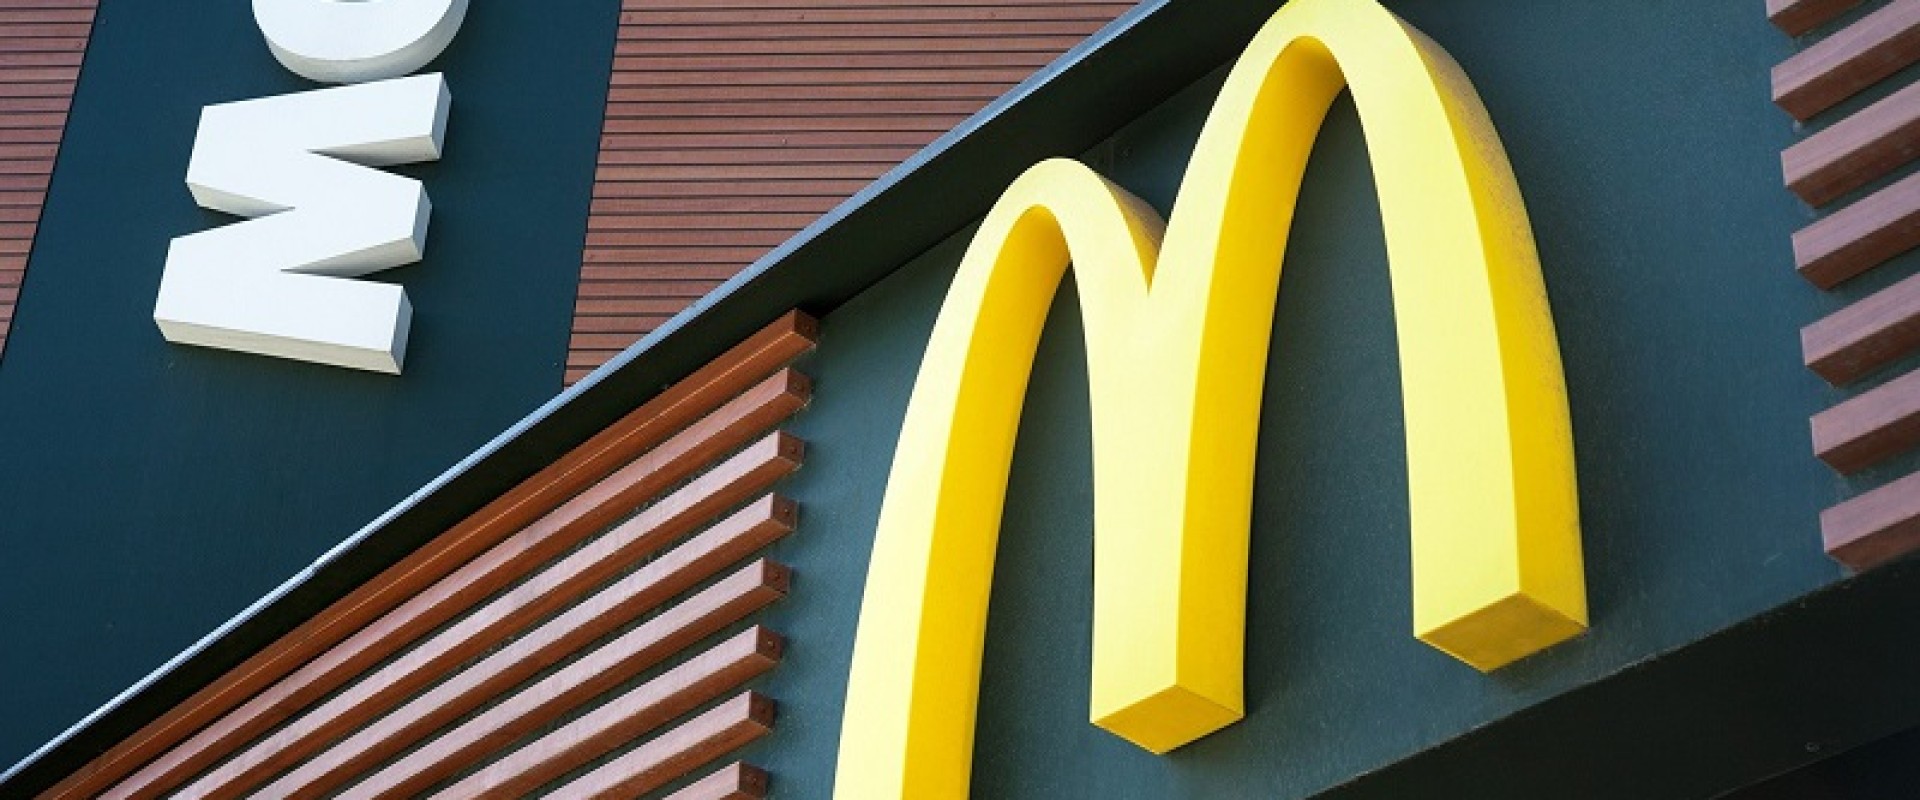 Новое название McDonald's и уход Starbucks из России. Новости за 23 мая